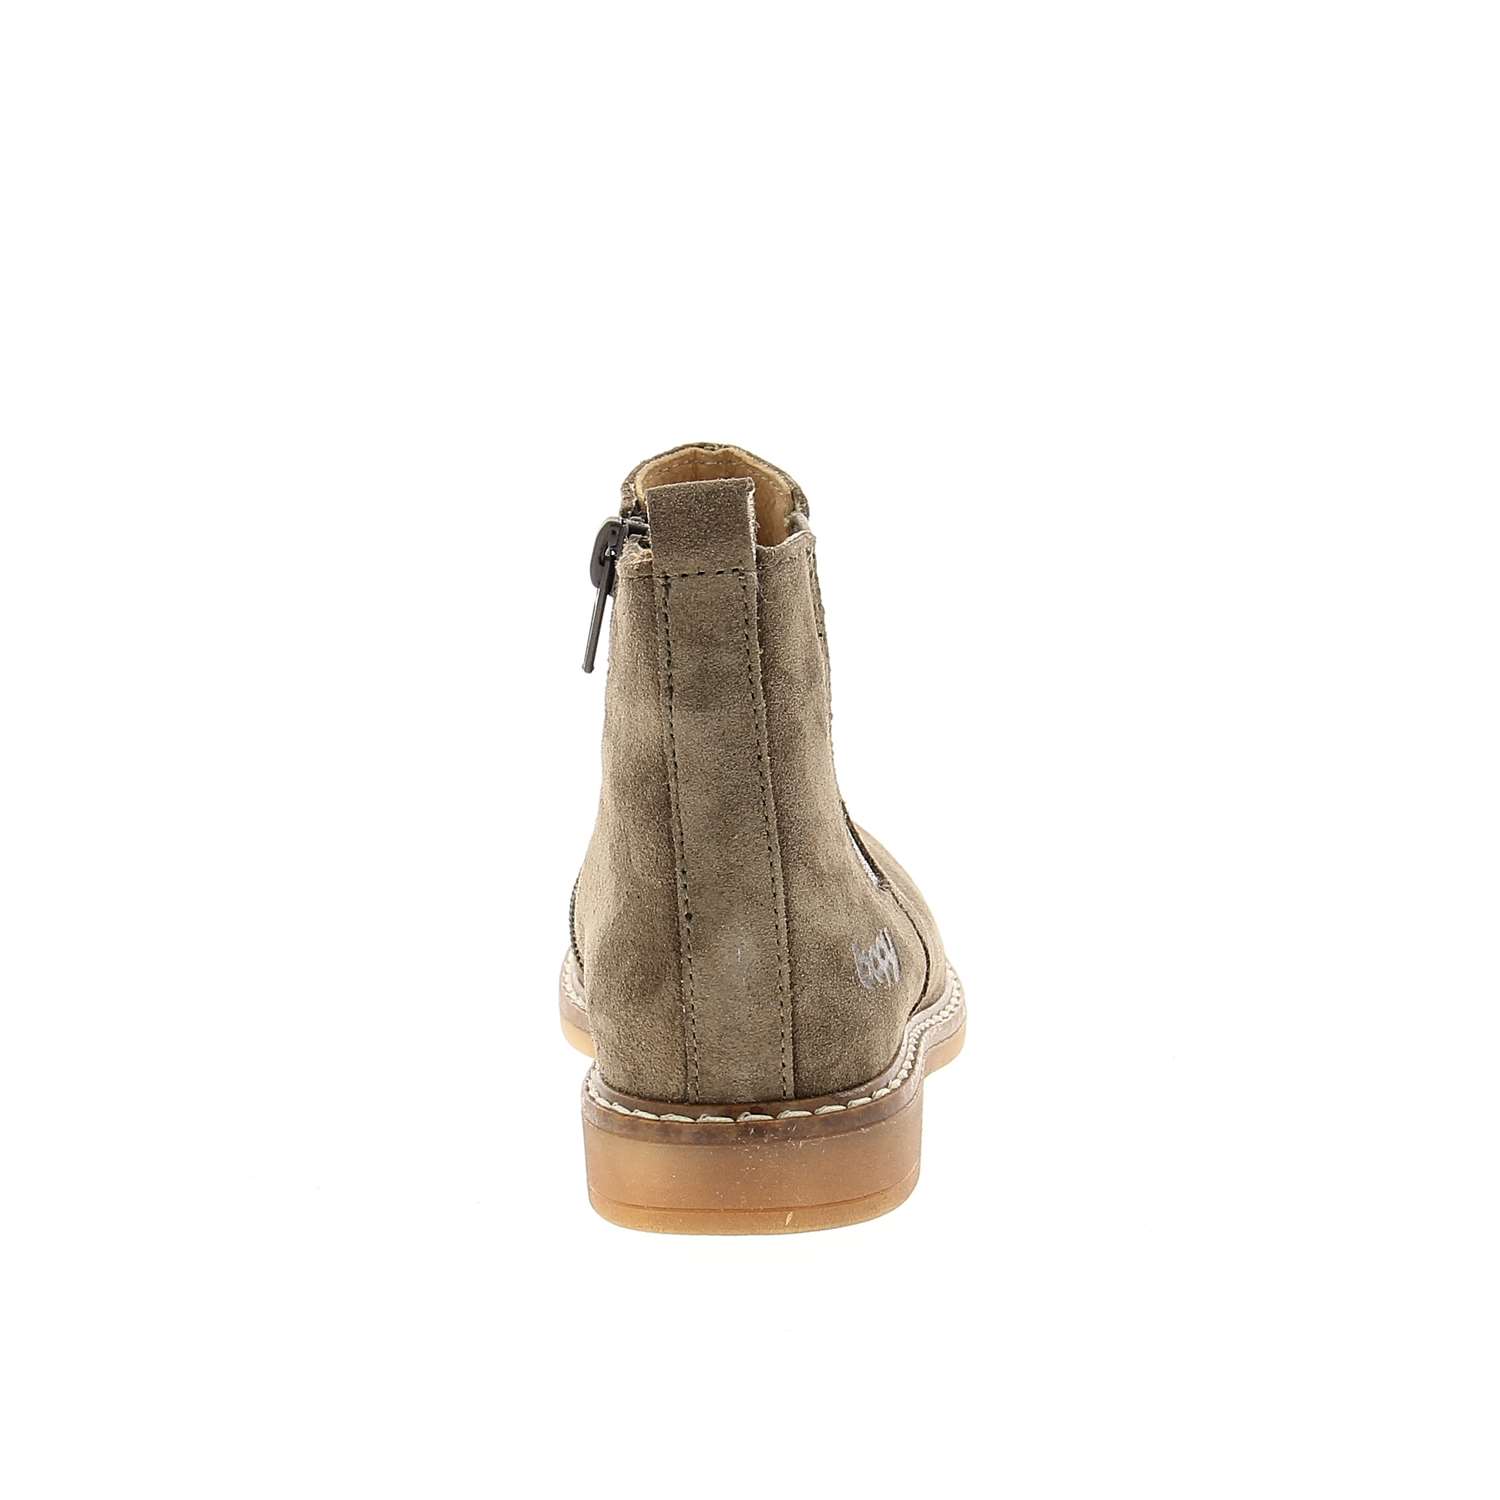 04 - SEVEN - BOPY - Boots et bottines - Croûte de cuir